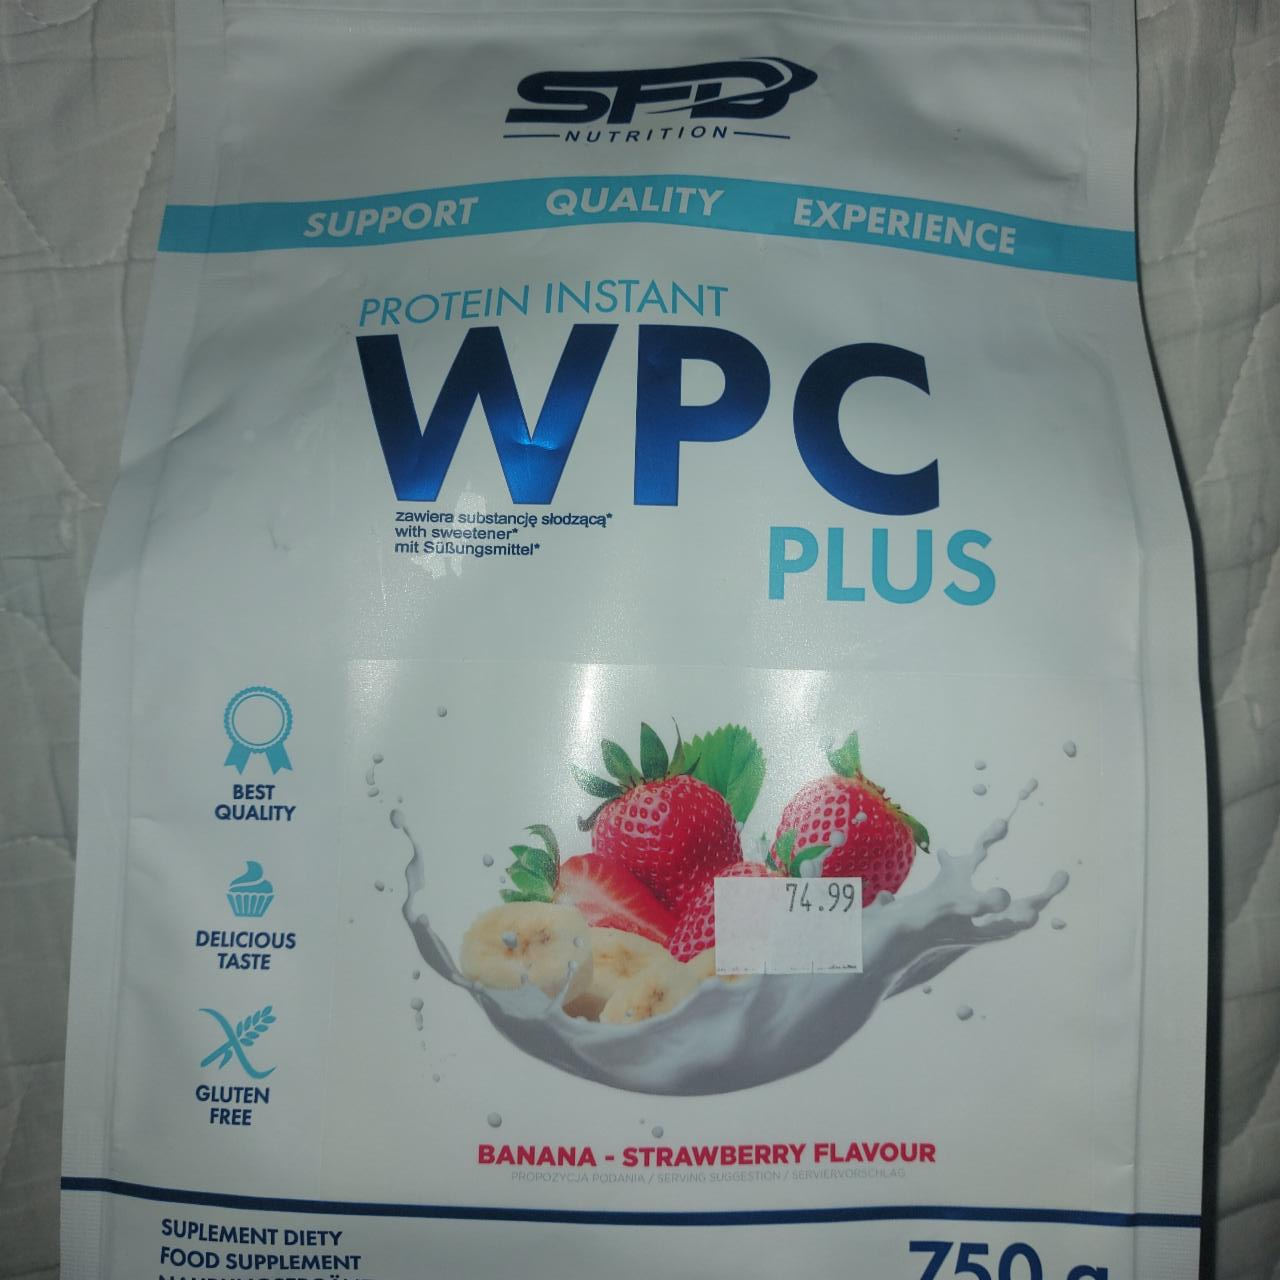 Zdjęcia - WPC plus banana strawberry SFD Nutrition